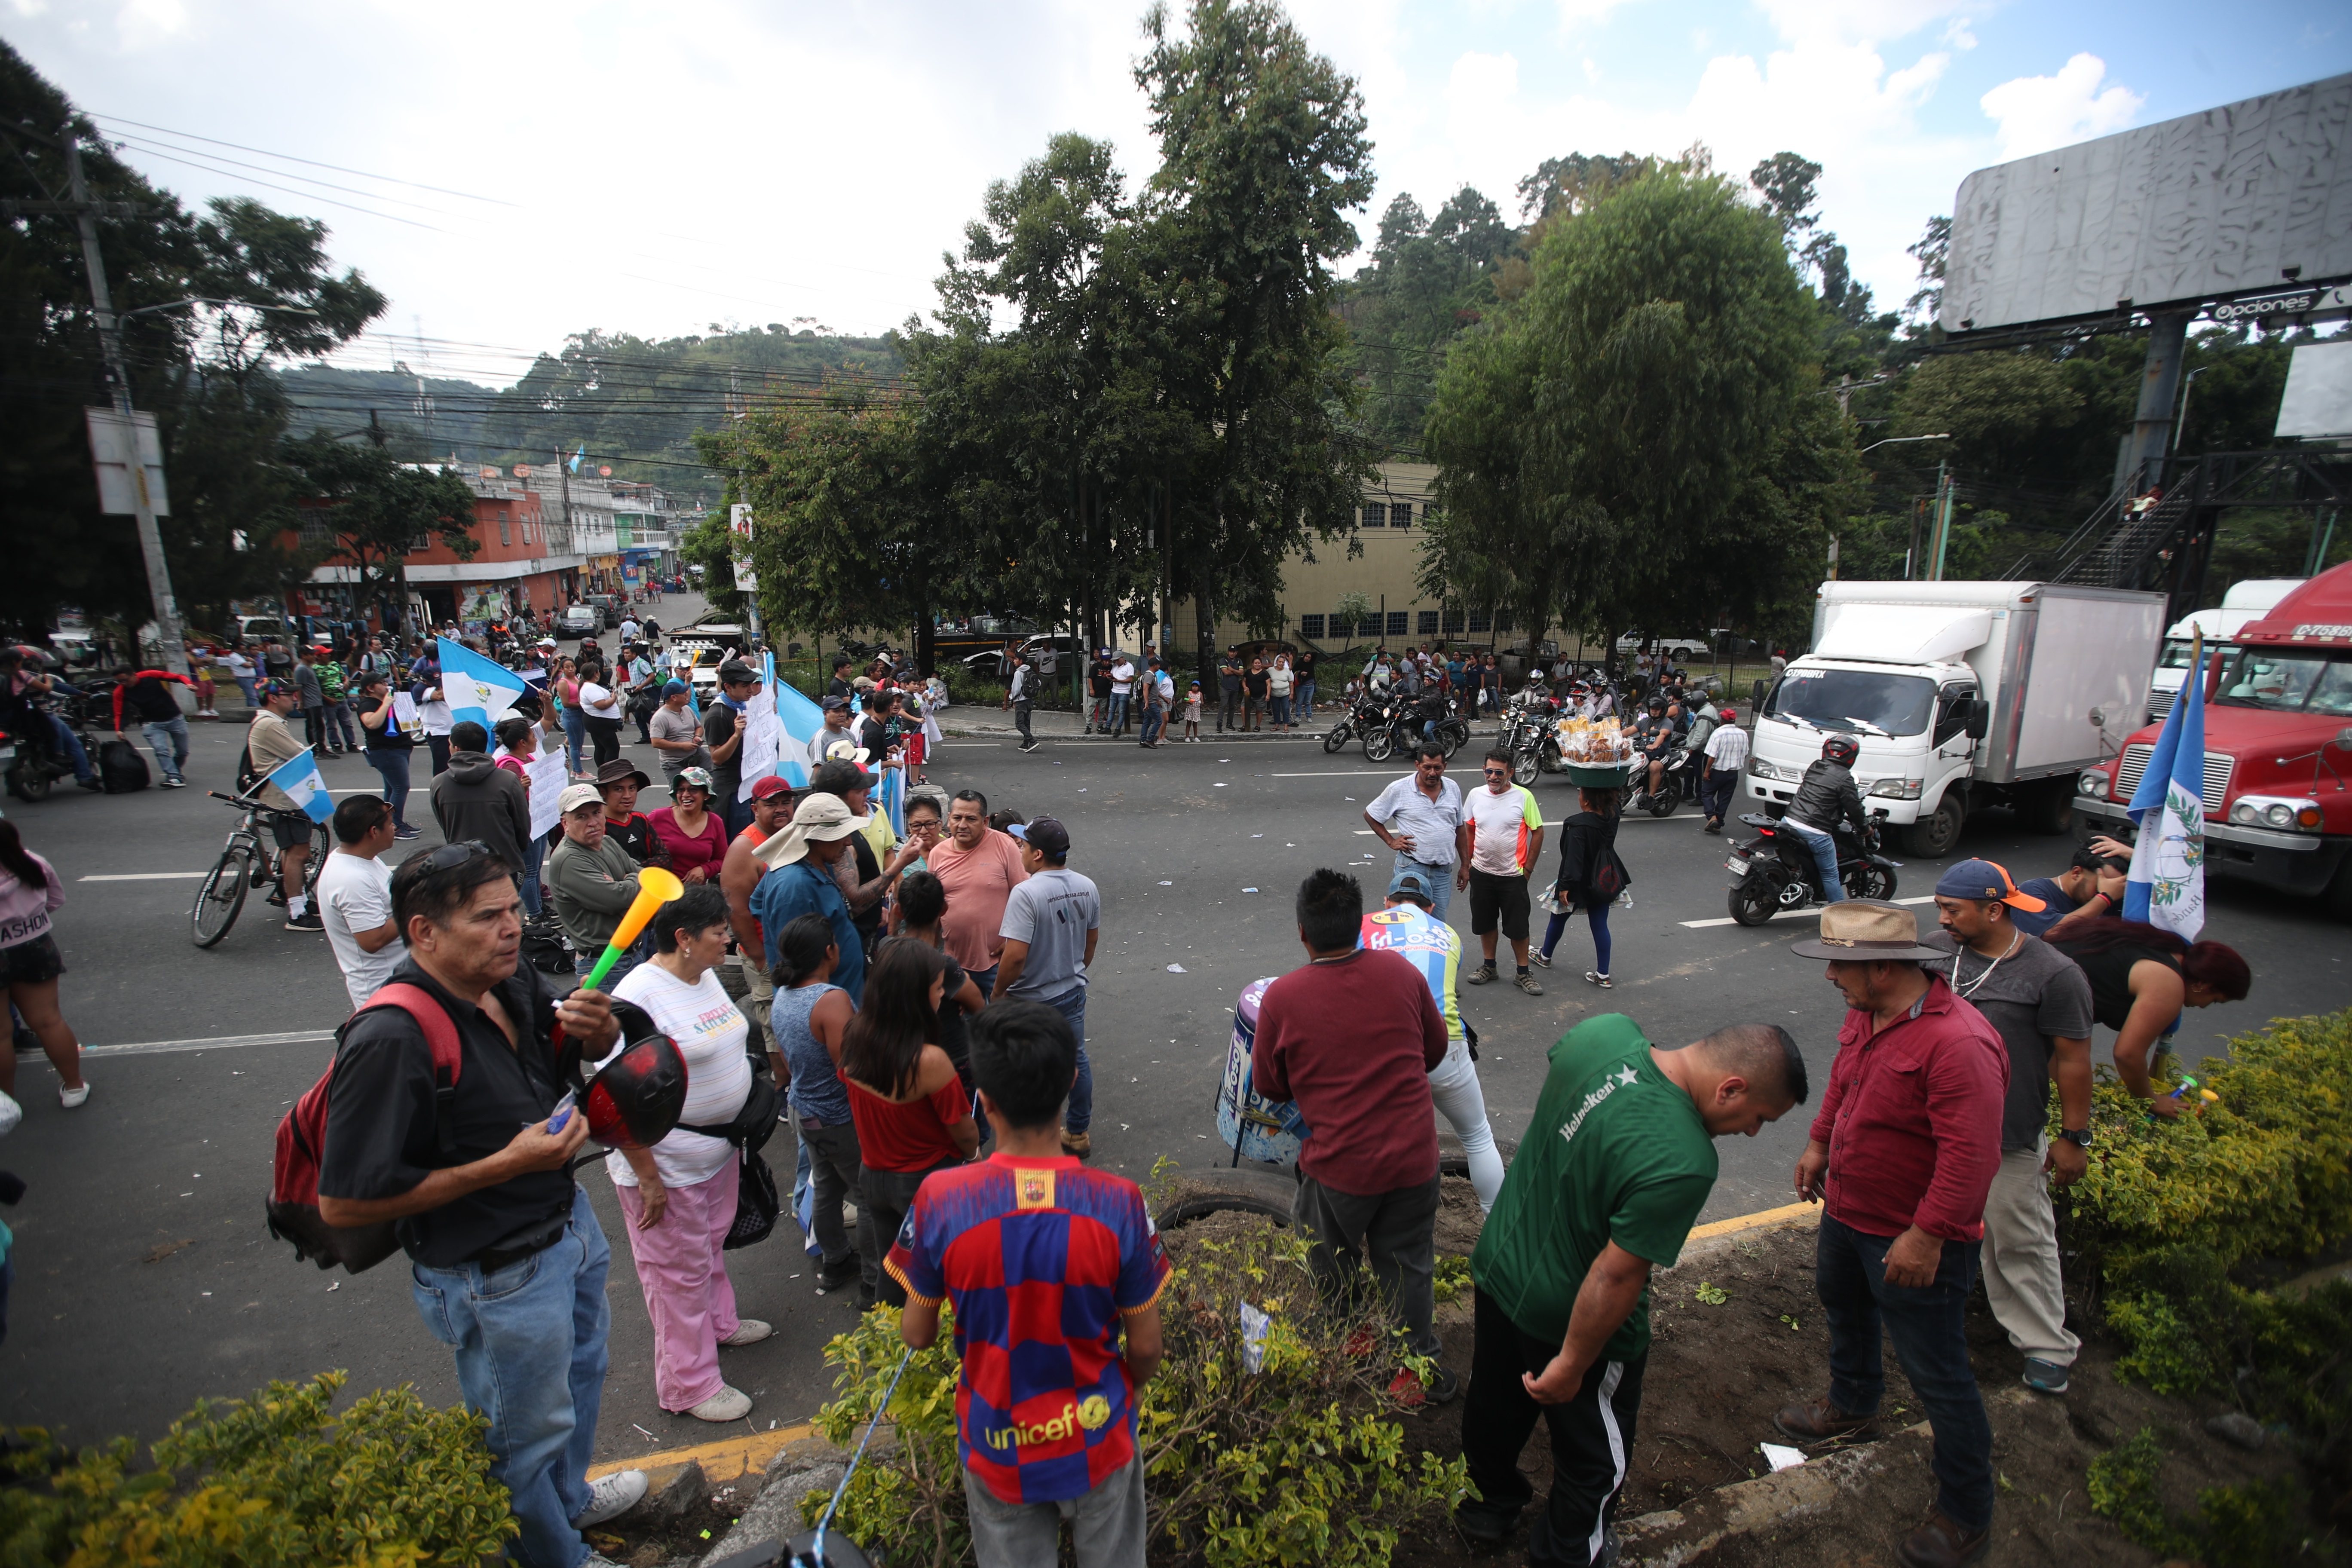 El MP espera que el Gobierno desaloje los bloqueos. Manifestantes en el km 13.5 de la carretera al sur, al inicio de la baja de Villa Lobos. (Foto Prensa Libre: Maria José Bonilla)